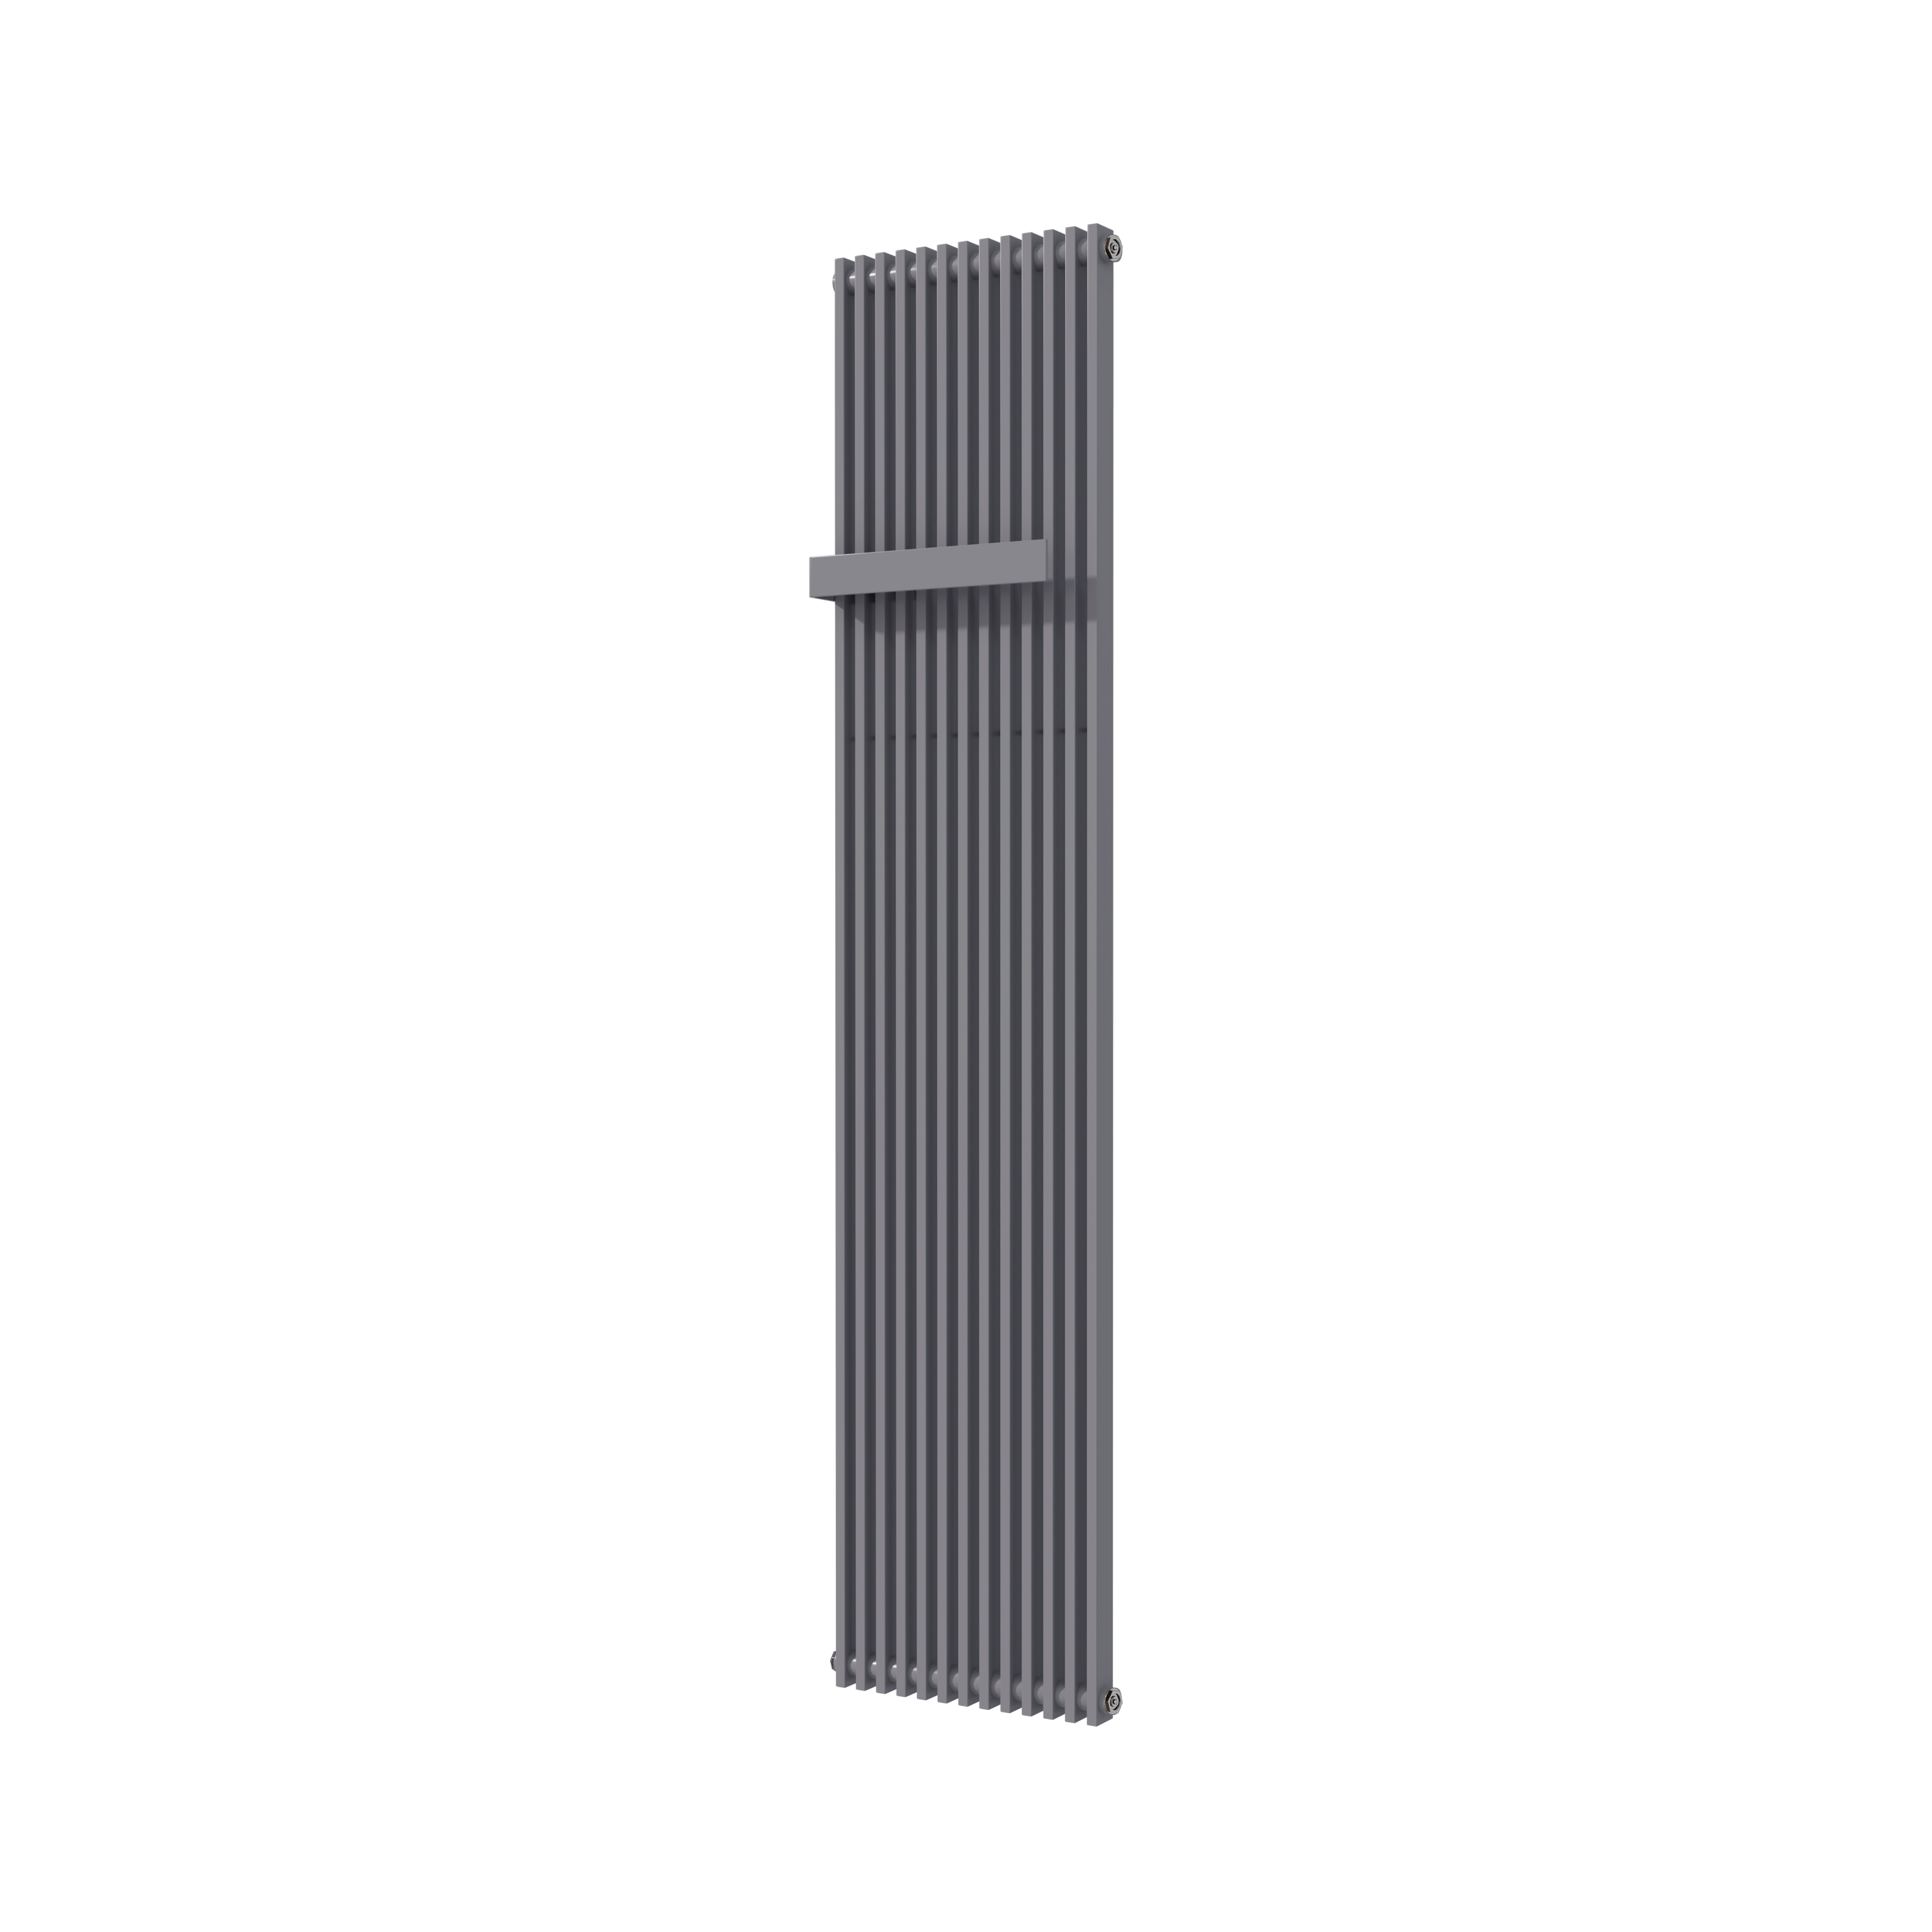 Vipera Corrason enkele badkamerradiator 40 x 180 cm centrale verwarming antraciet grijs zijaansluiting 1,339W